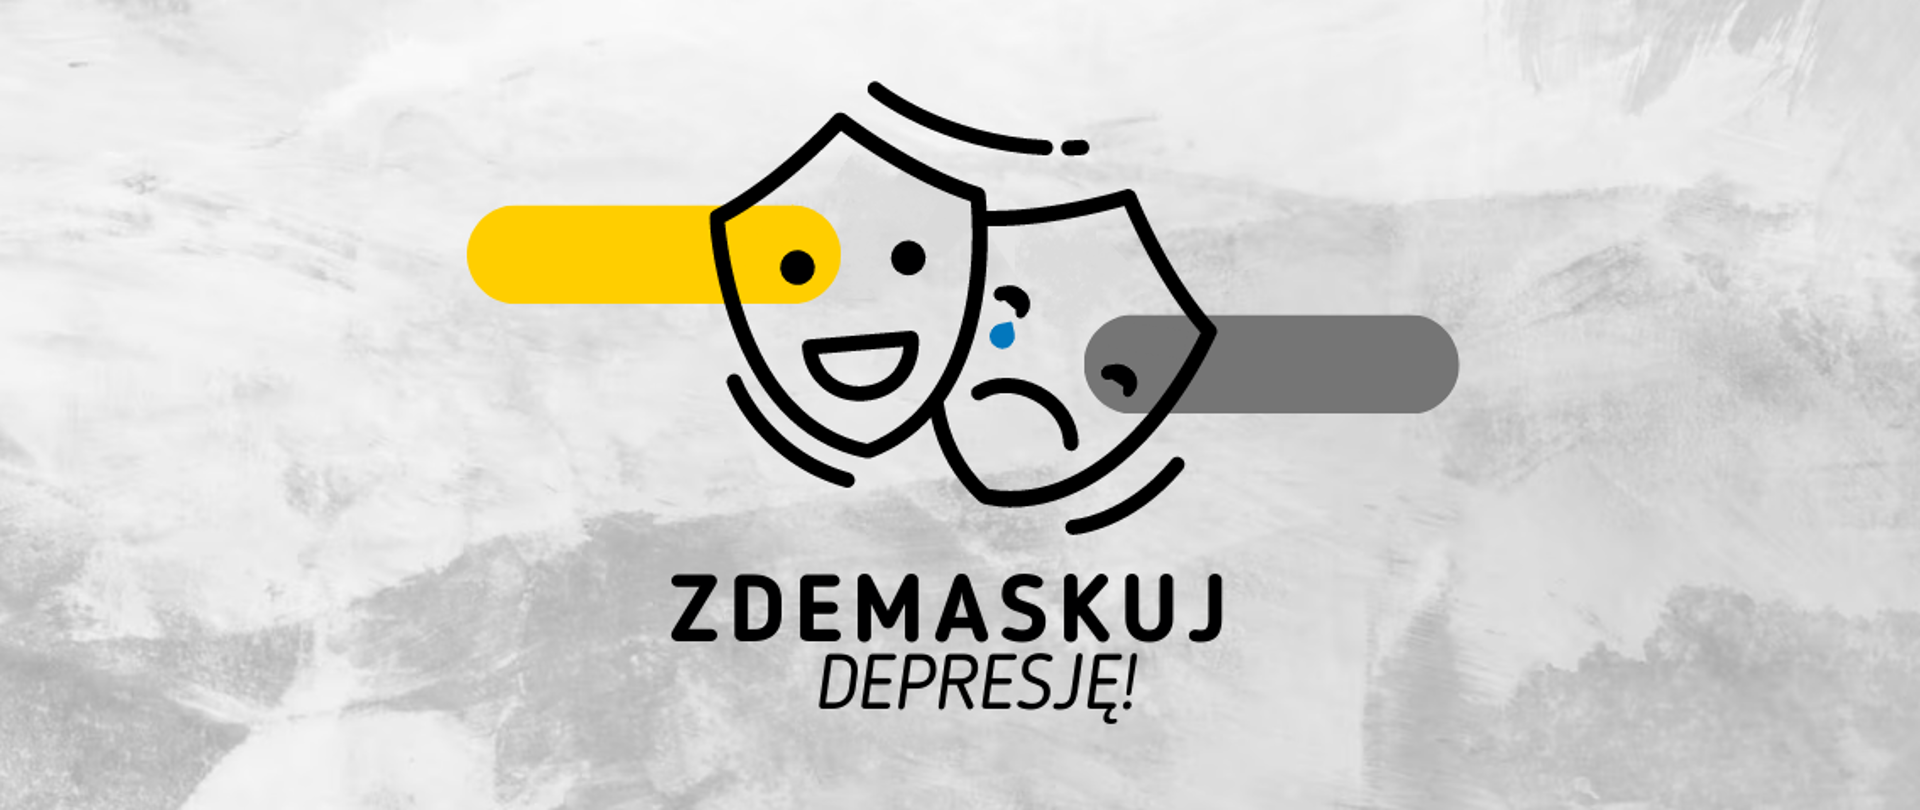 Na grafice znajdują się dwie maski - smutna i wesoła. Poniżej jest napisane: zdemaskuj depresję!. Tło jest szare.